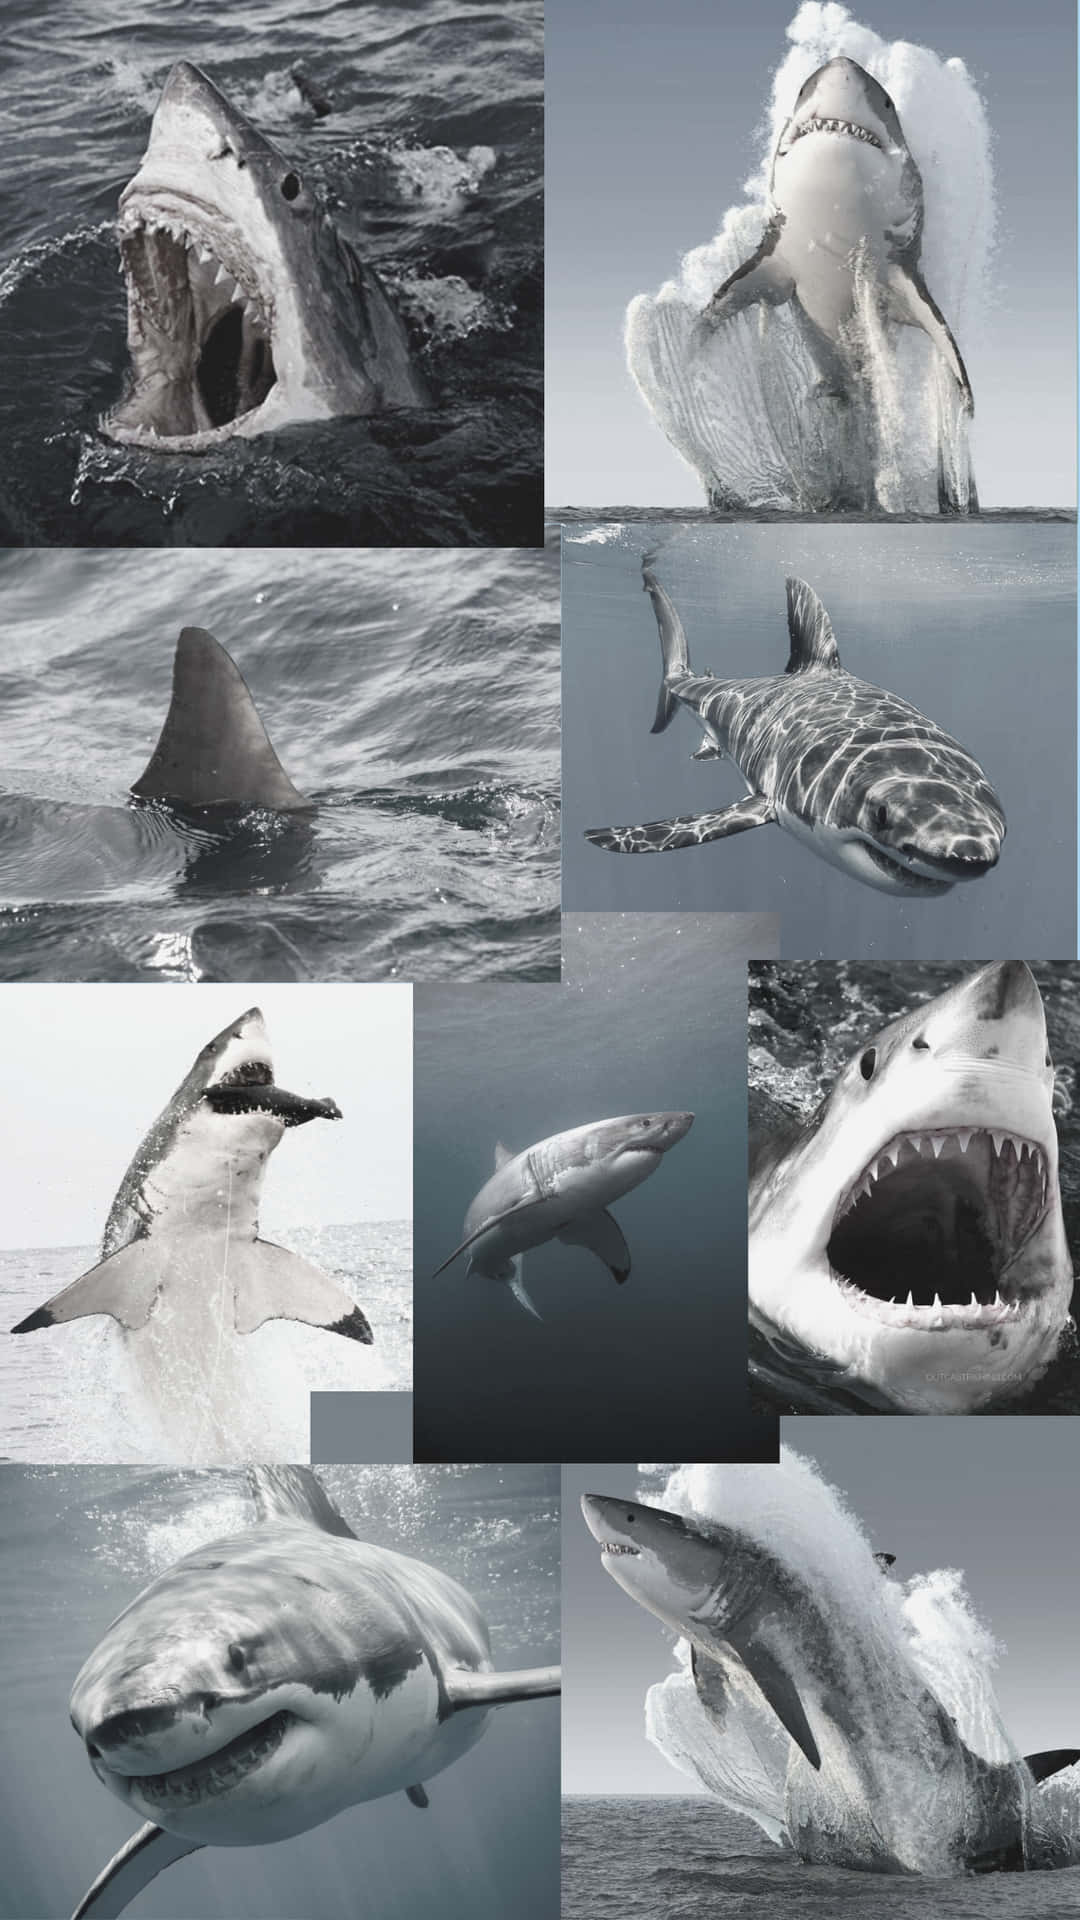 Einecollage Von Bildern Von Haien Im Ozean. Wallpaper